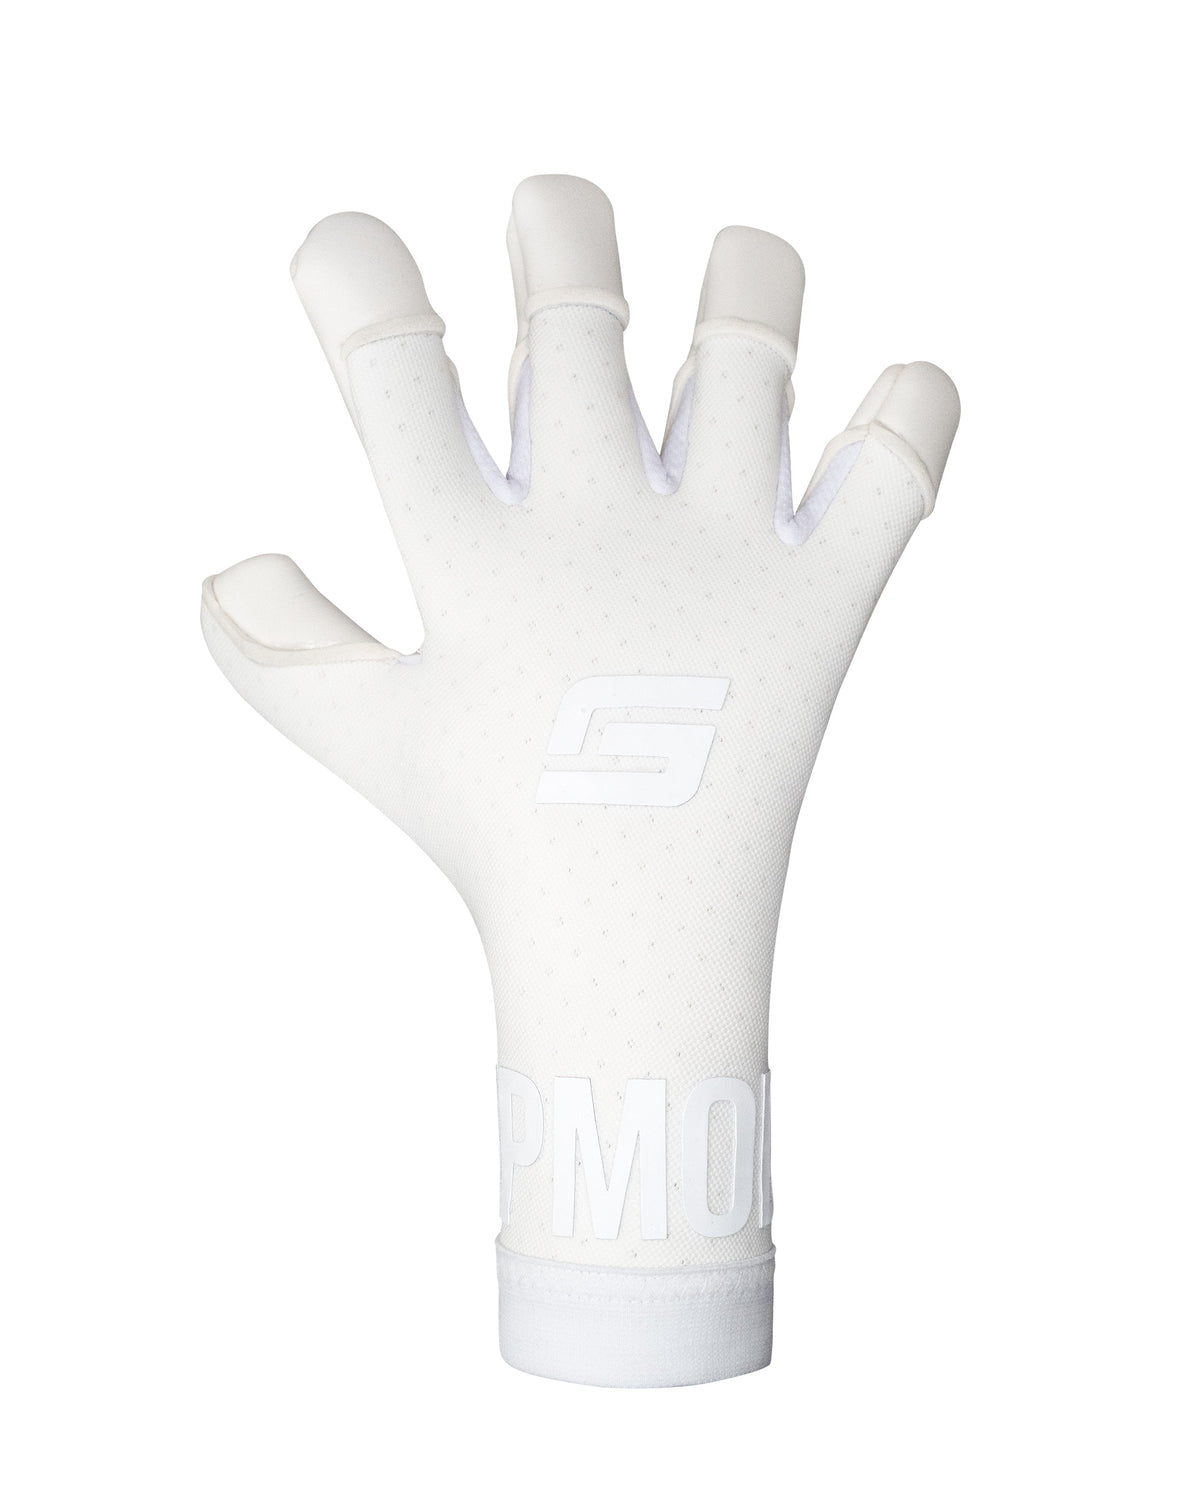 Air Whiteout Fingertip Goalkeeper Gloves